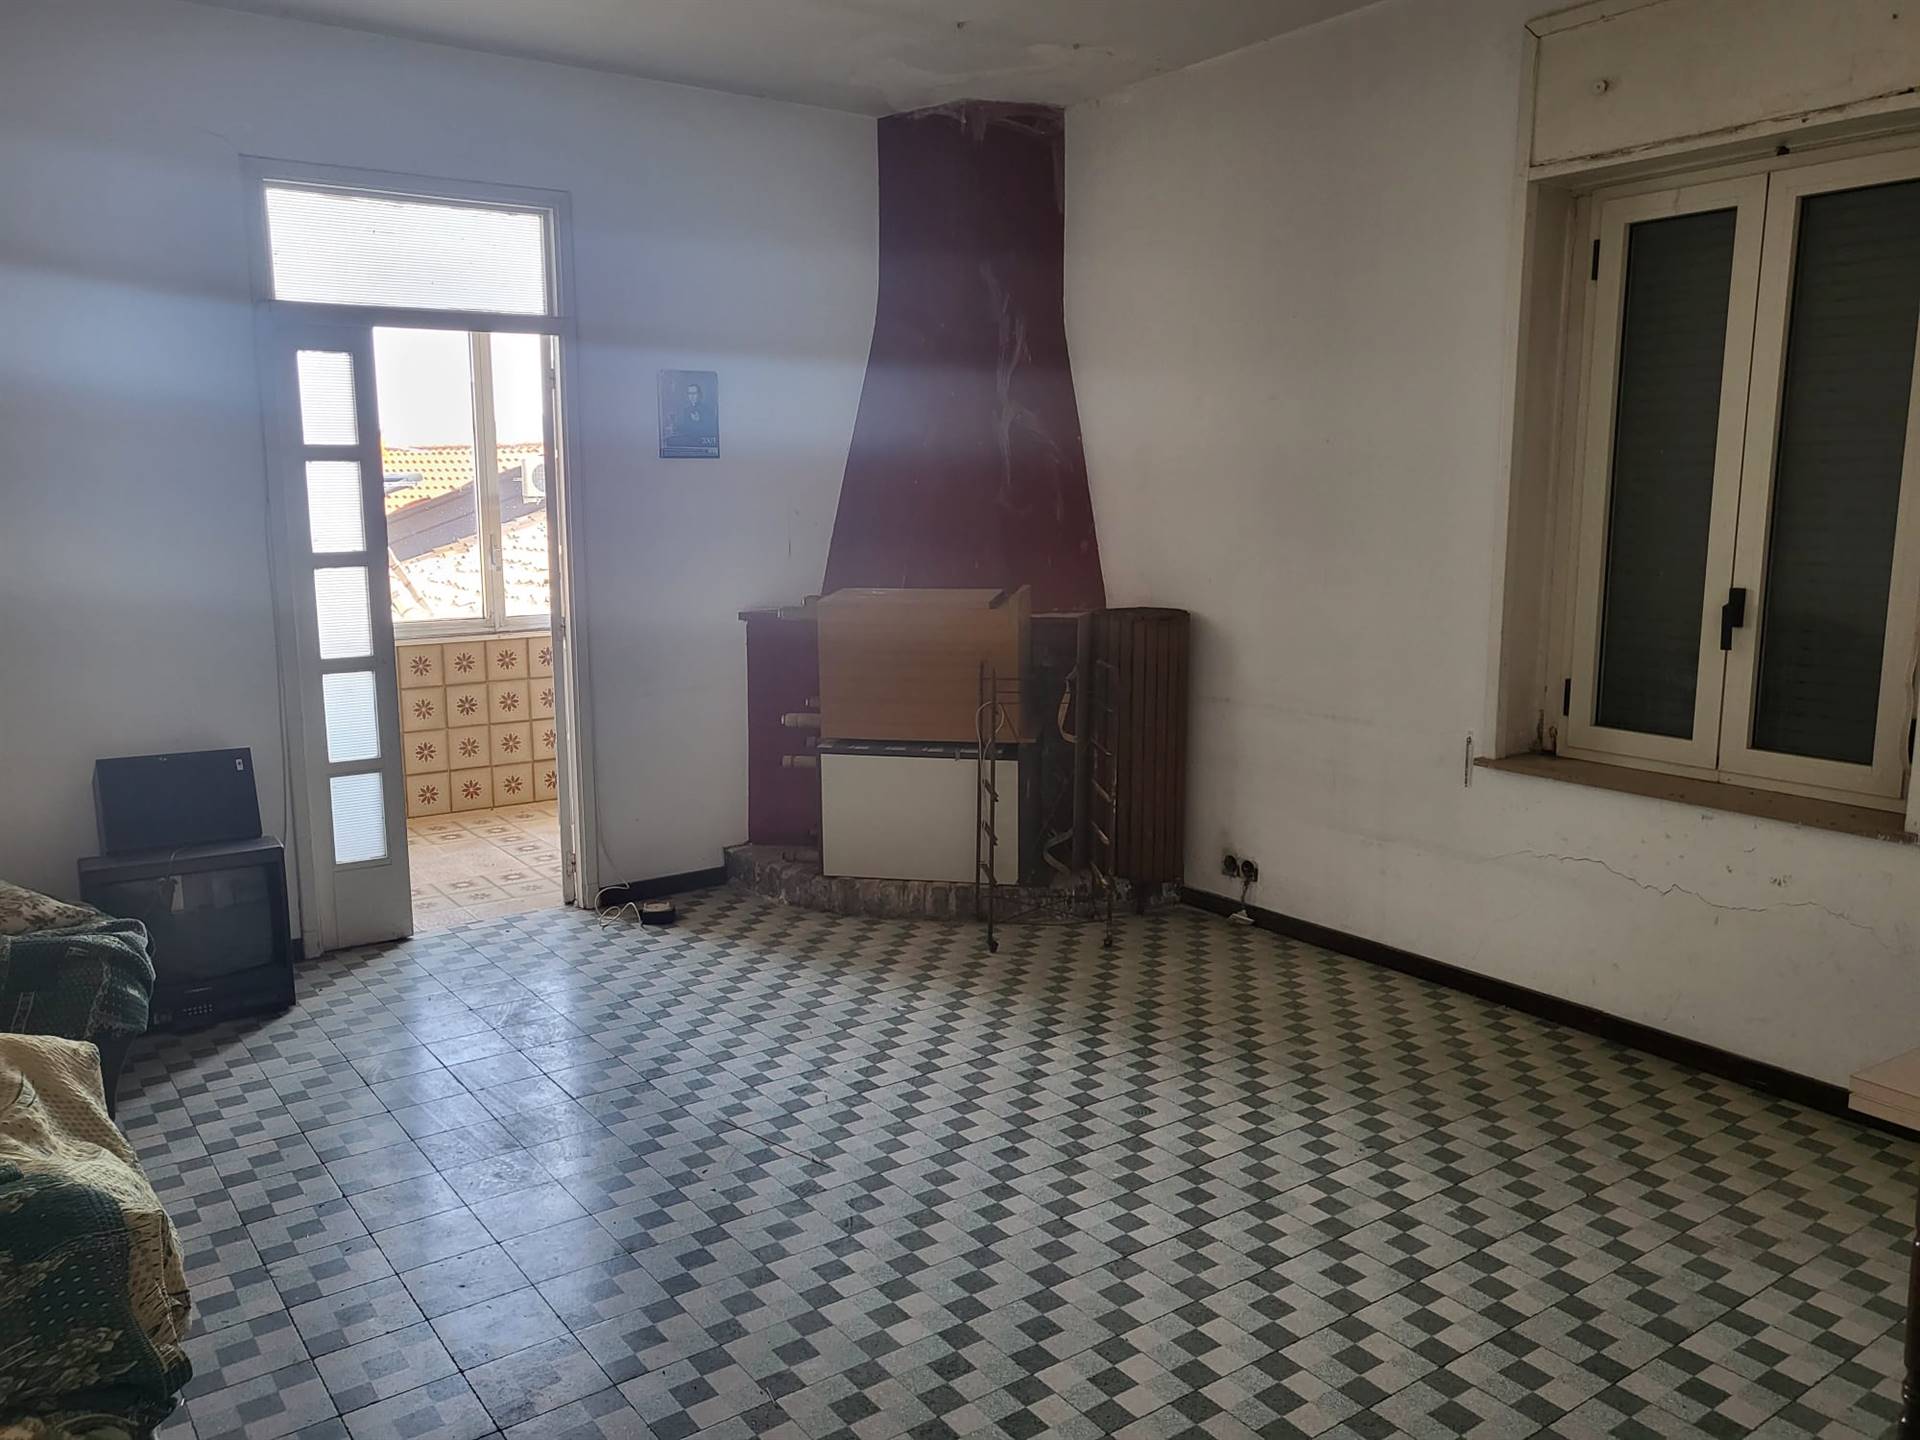 Appartamento in vendita a Montalto Uffugo, 8 locali, prezzo € 80.000 | CambioCasa.it